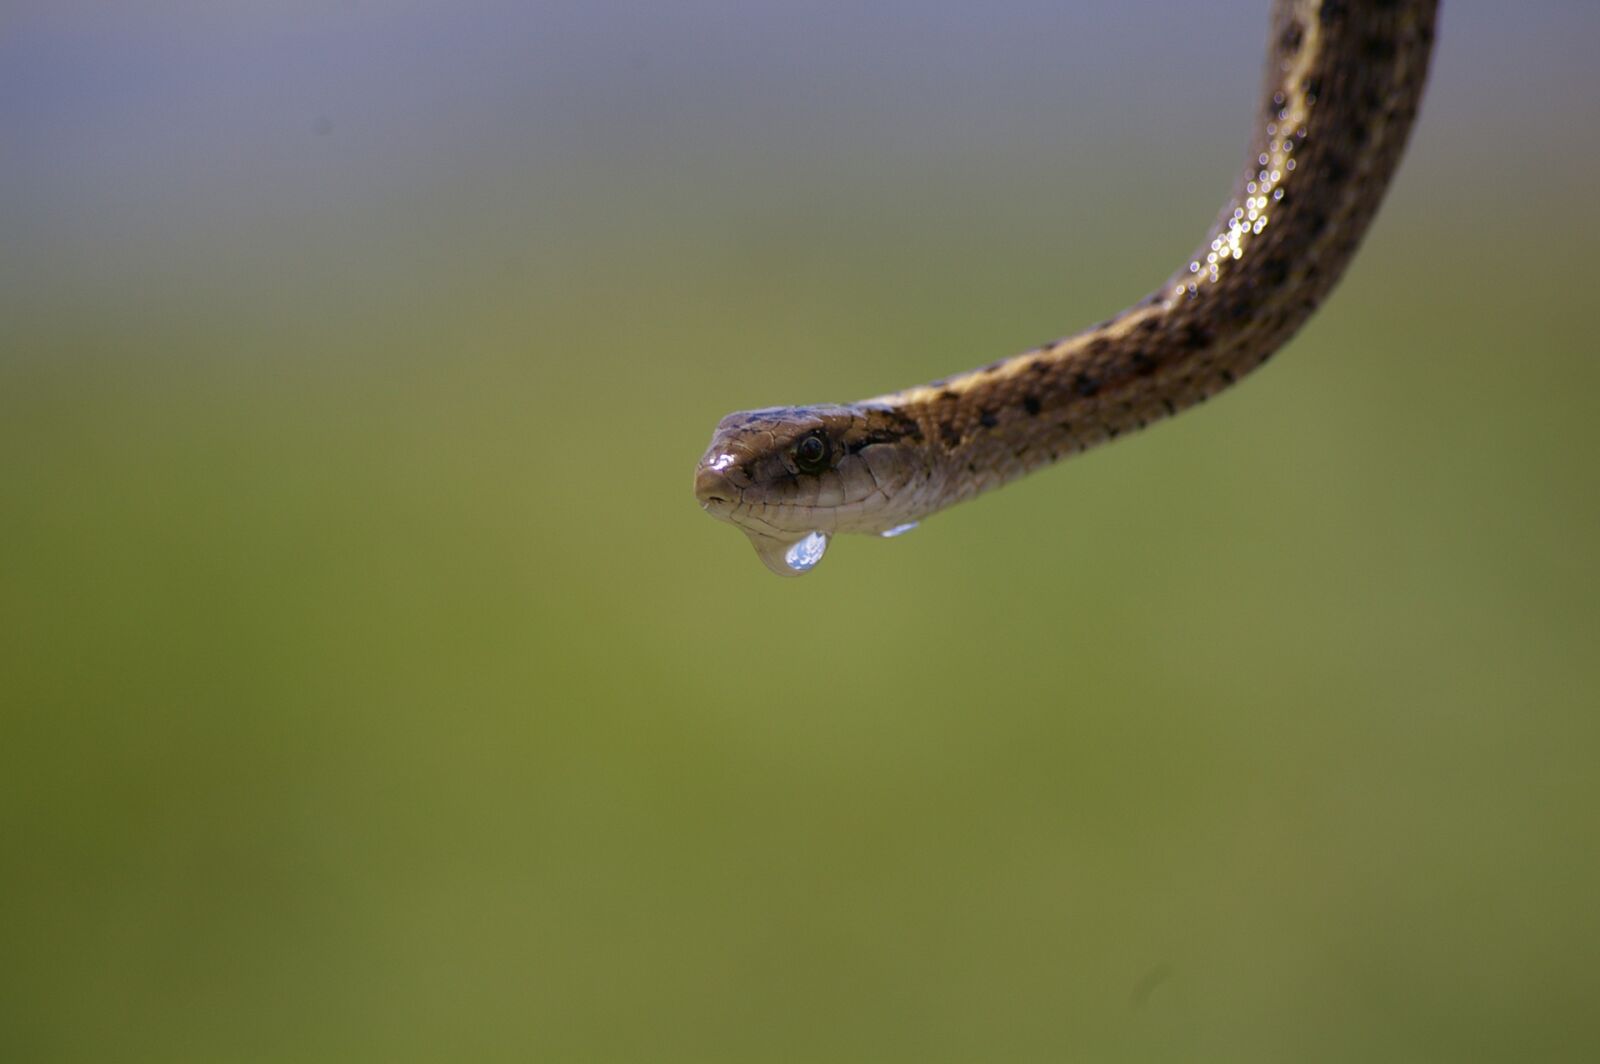 Pentax K110D sample photo. Garter snake, water, drip photography